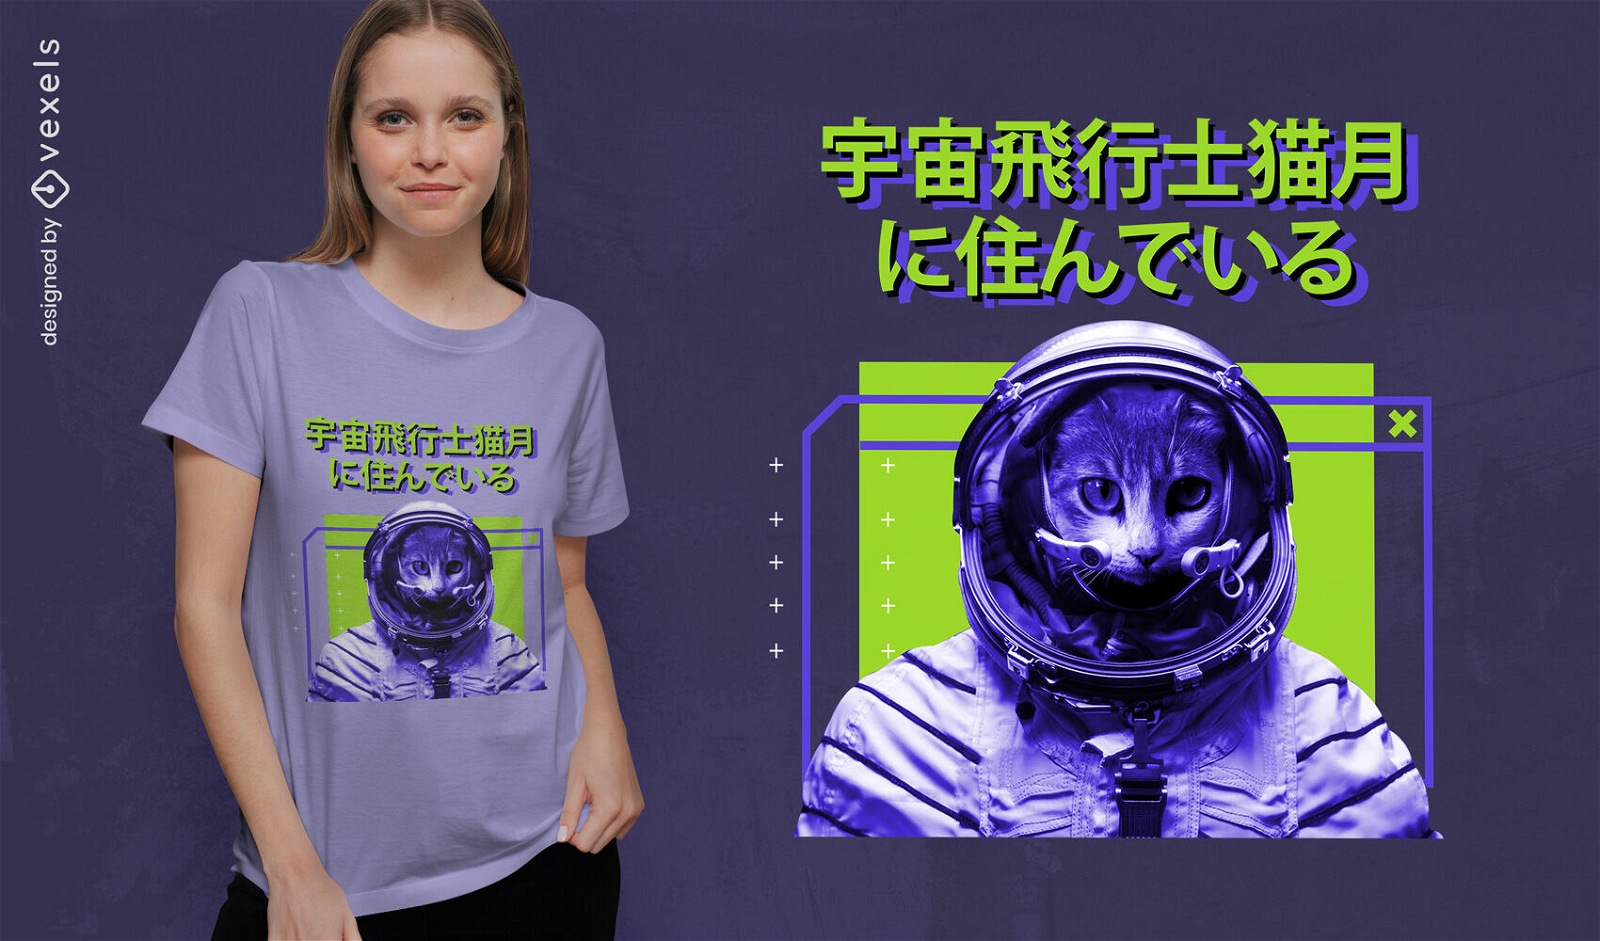 Space astronaut cat animal t-shirt psd